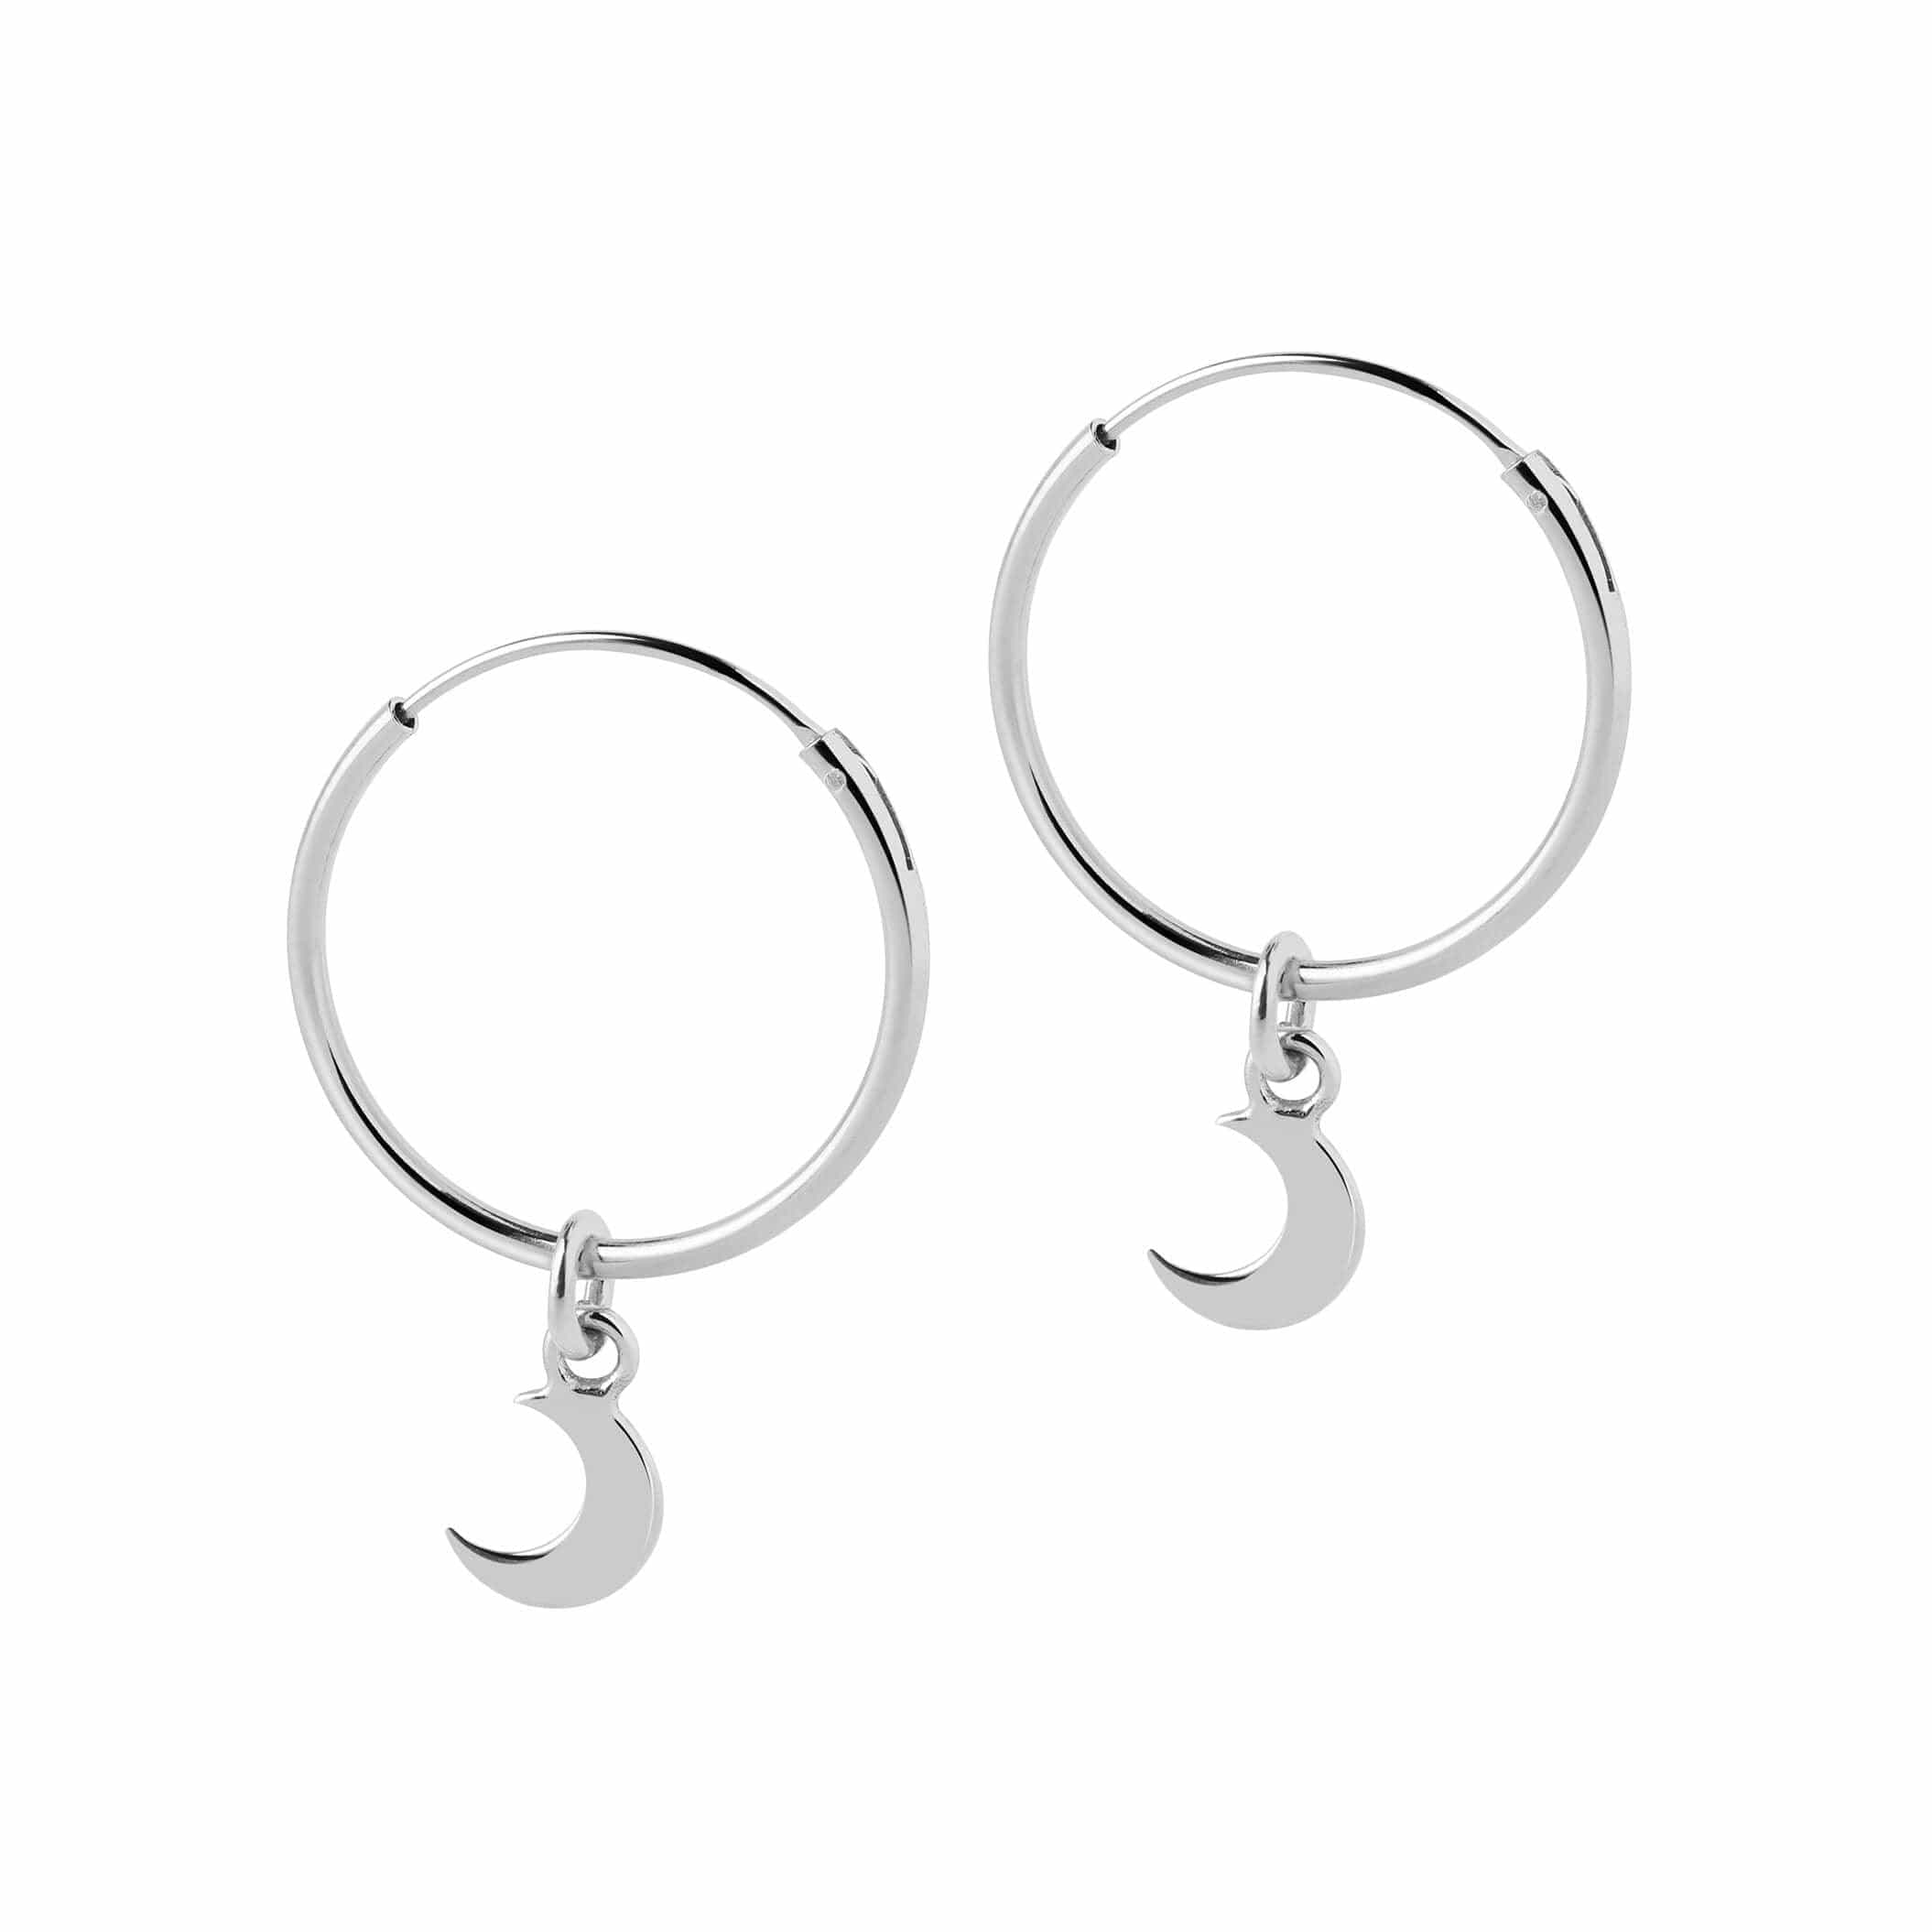 hoop earrings silver with moon pendant 18mm